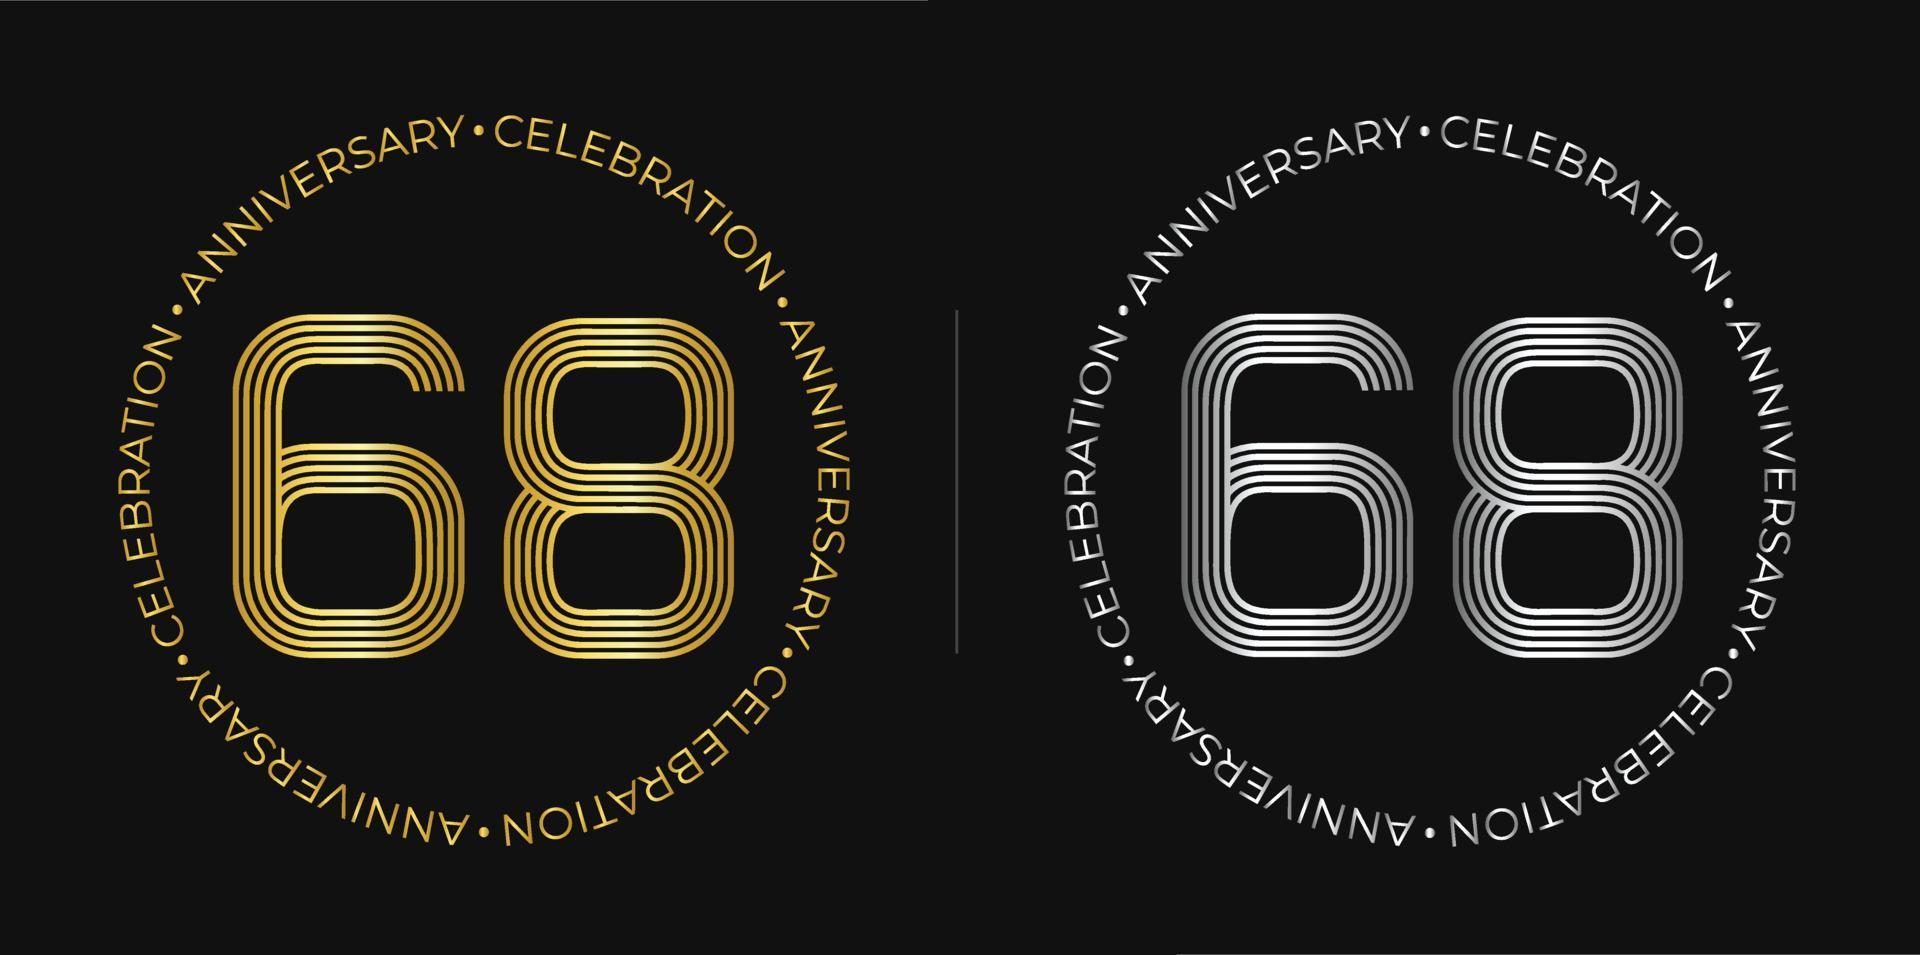 68e anniversaire. bannière de célébration d'anniversaire de soixante-huit ans aux couleurs dorées et argentées. logo circulaire avec des chiffres originaux aux lignes élégantes. vecteur